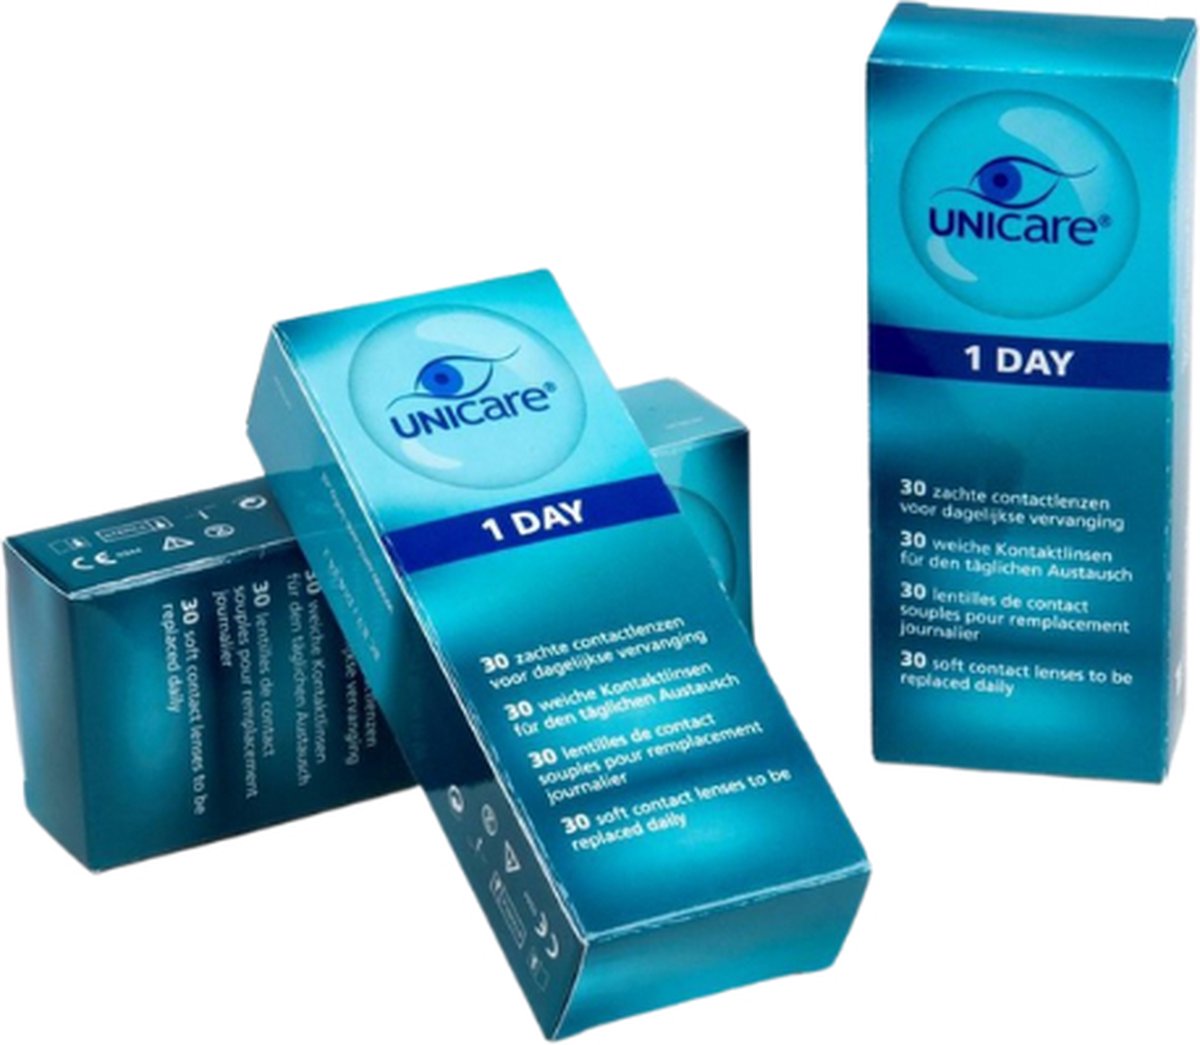 Unicare daglenzen -2,25 - 90 stuks - zachte contactlenzen dag - voordeelverpakking